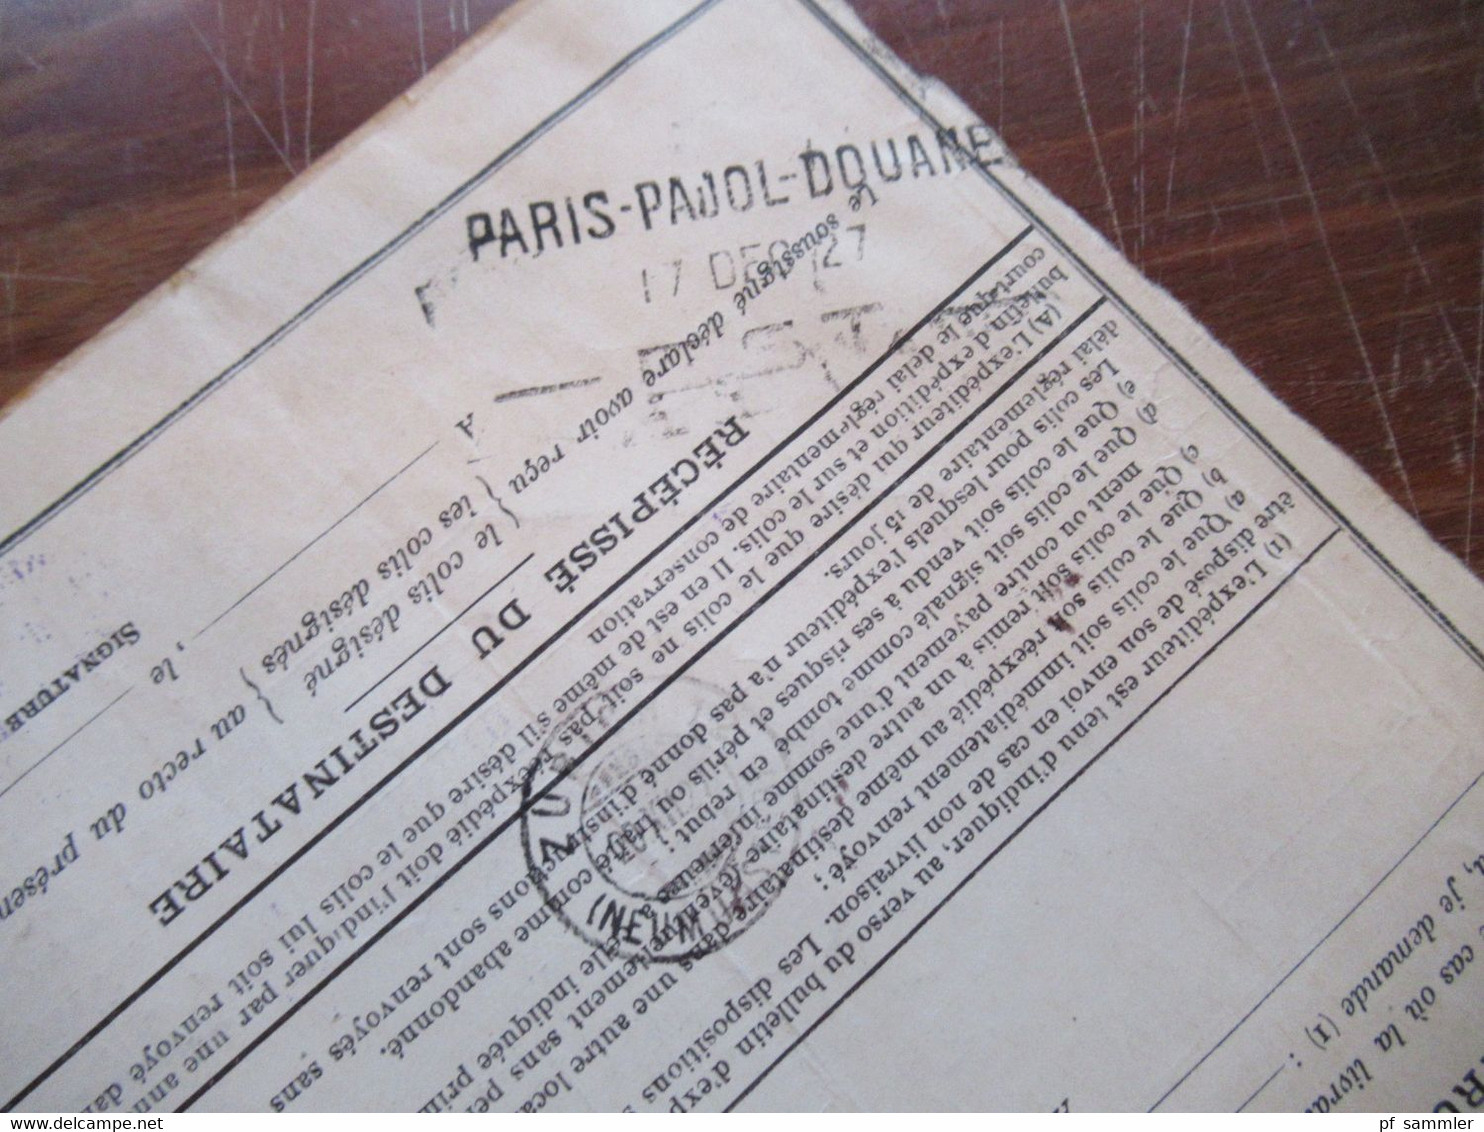 Frankreich 1927 Auslandspaketkarte Colis Postaux In Die Schweiz Valeur Declaree / Paris - Est Mit Vielen Stempeln!! - Cartas & Documentos